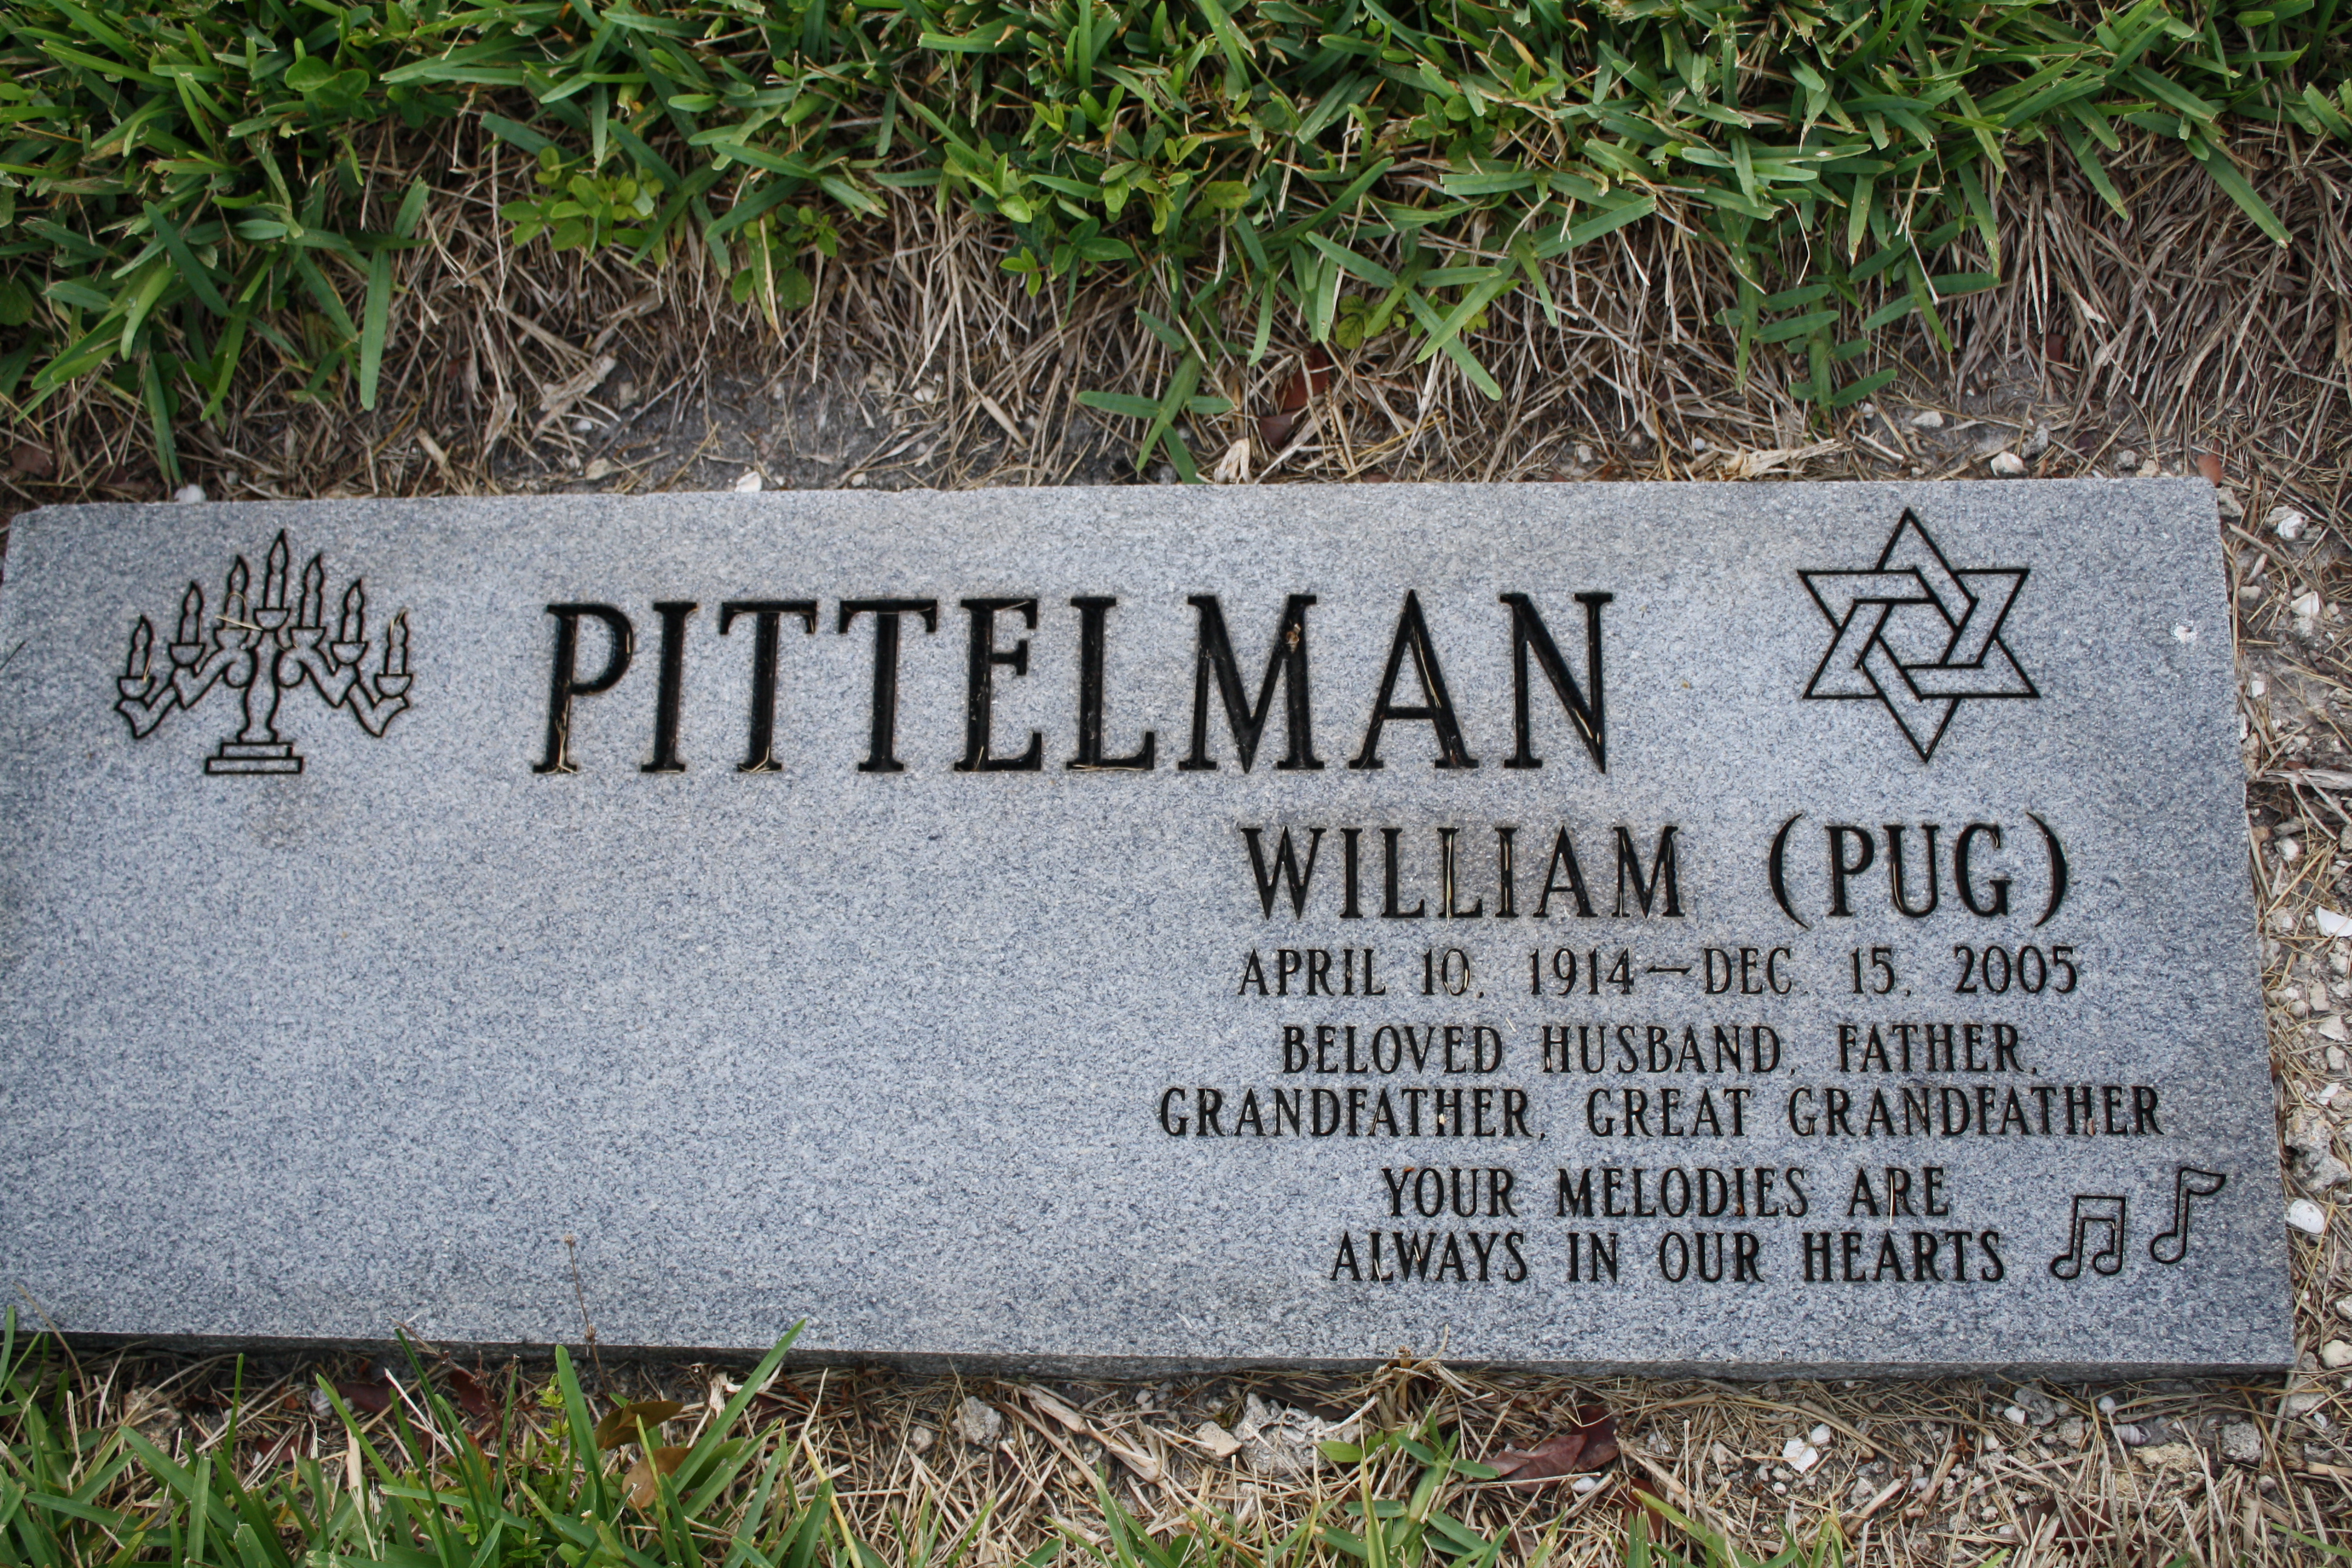 William "Pug" Pittelman